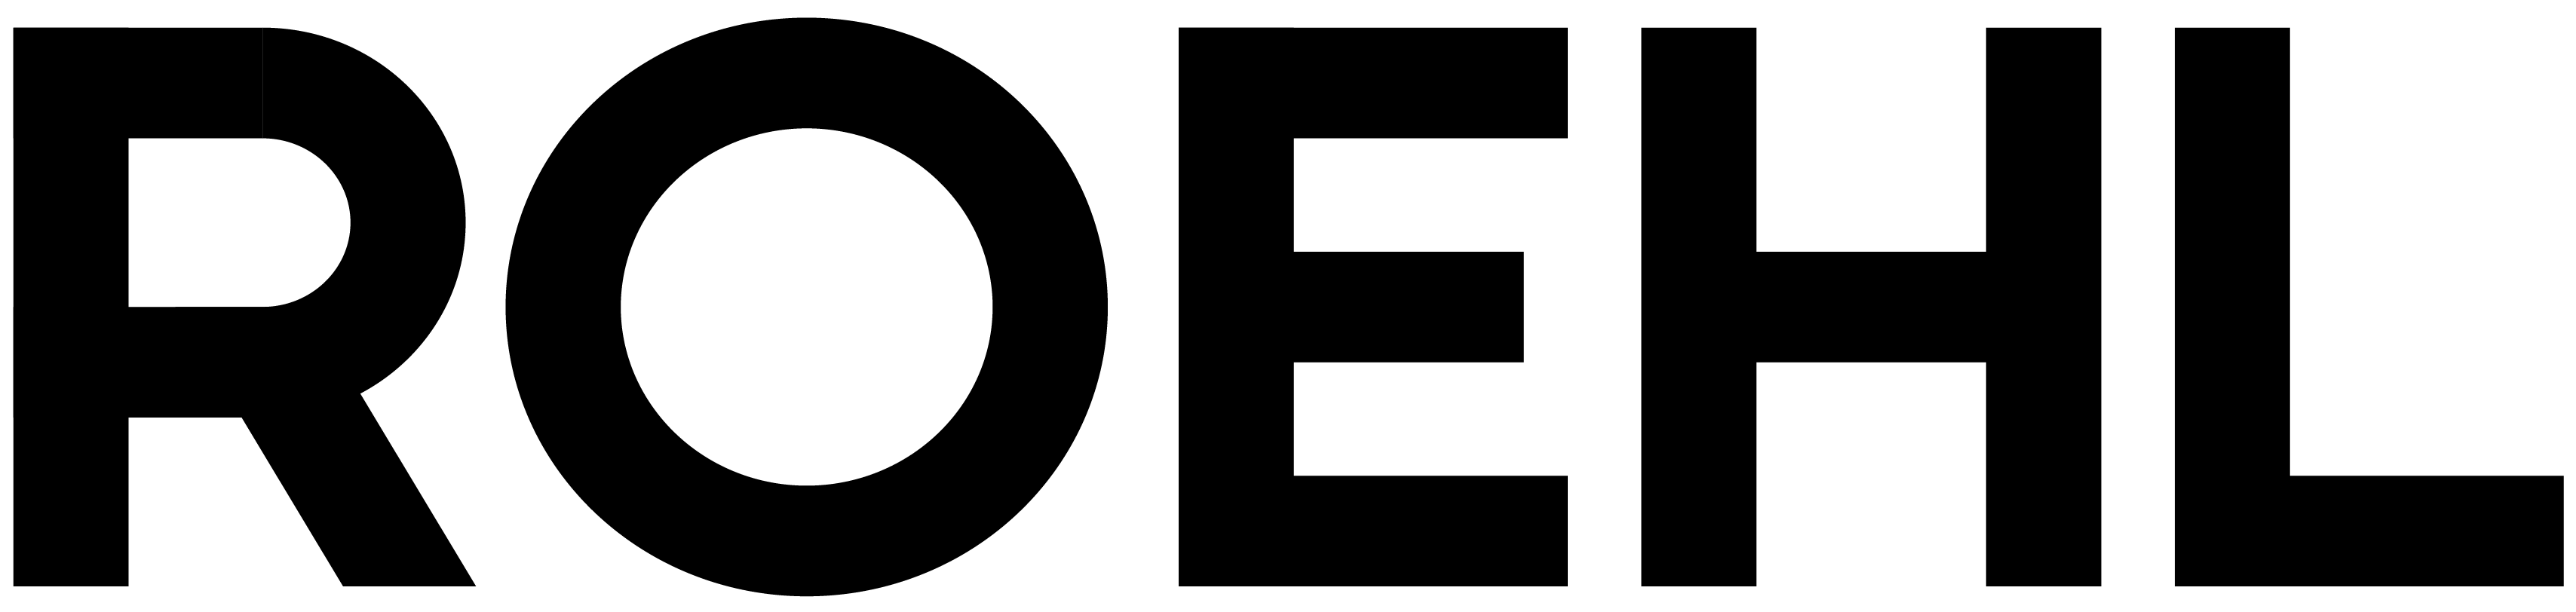 roehl-logo-black